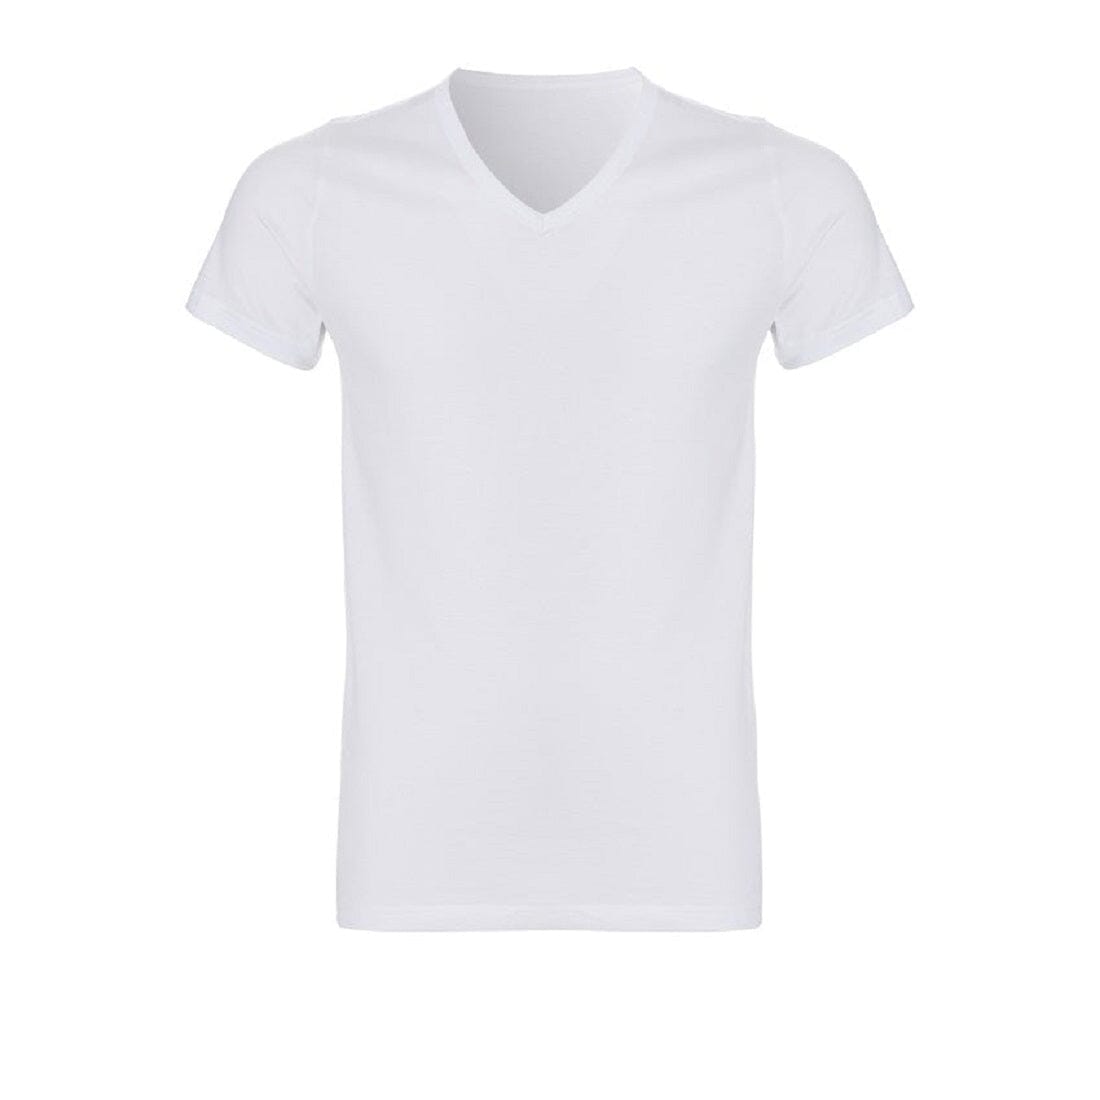 Ten Cate - 30870 - Basic V-Shirt 2-pack - White Shirt Ten Cate 